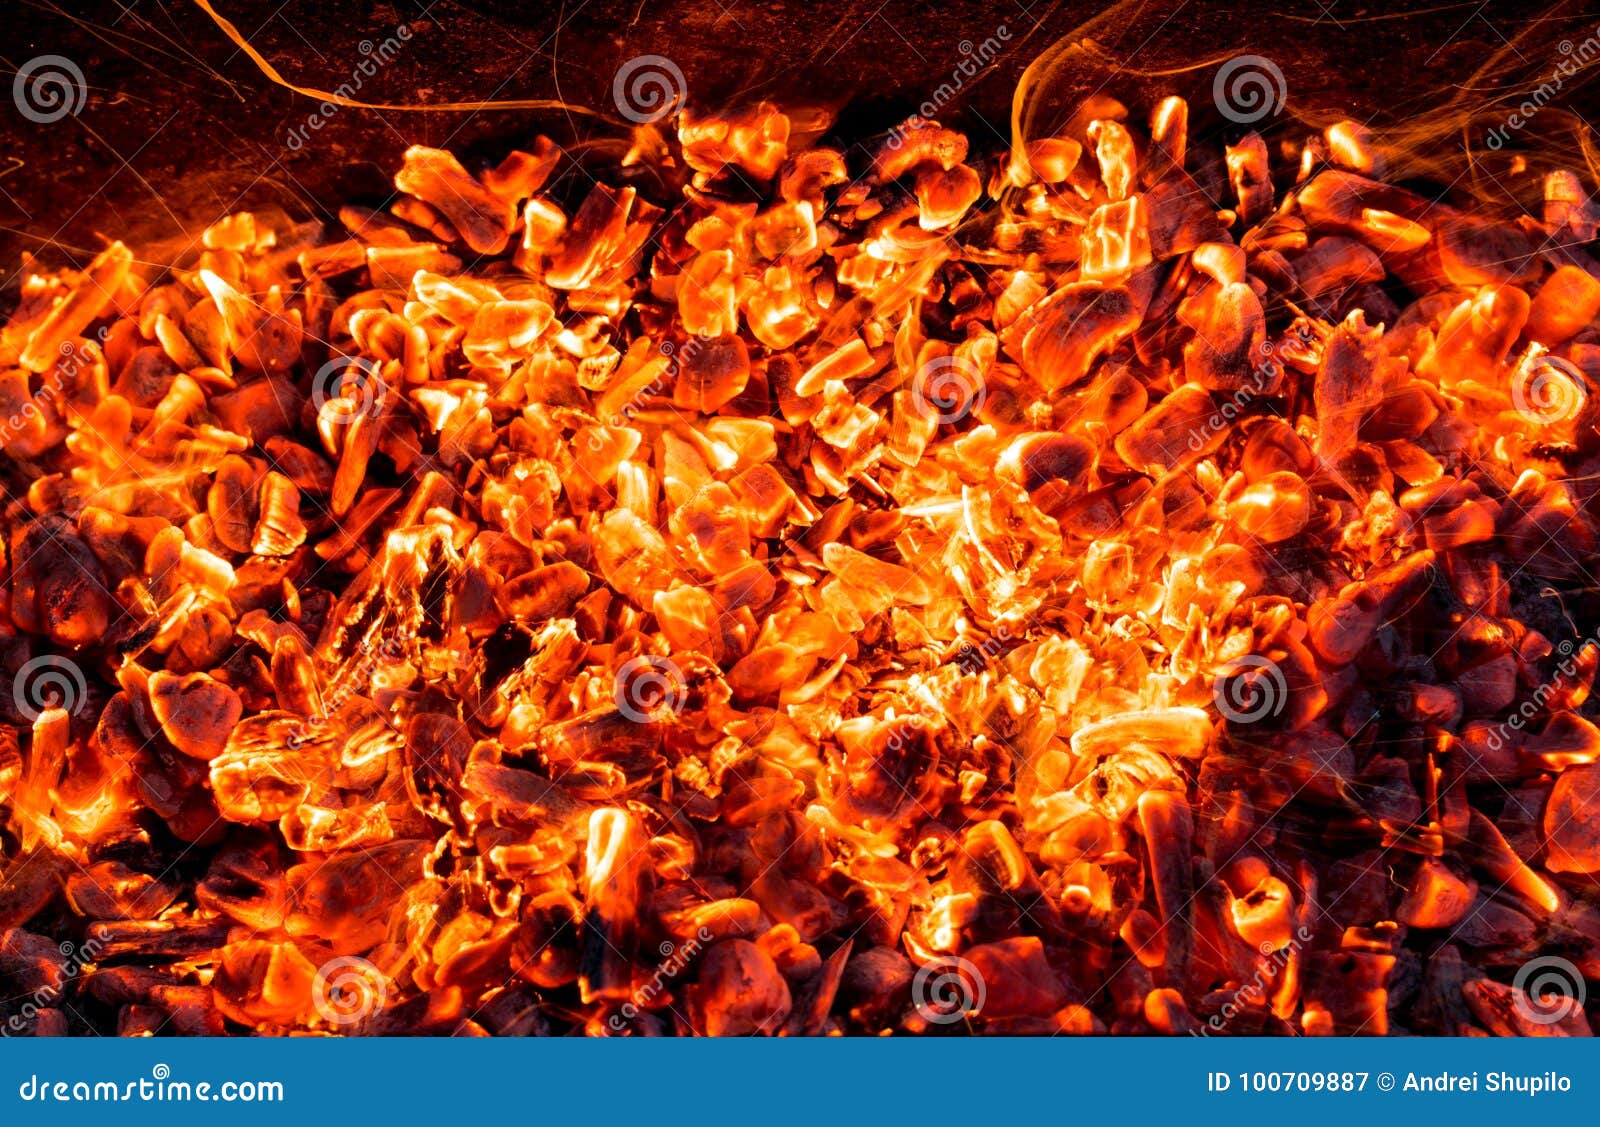 Αφηρημένο υπόβαθρο του καψίματος των ανθράκων Φωτογραφία μιας αφηρημένης σύστασης